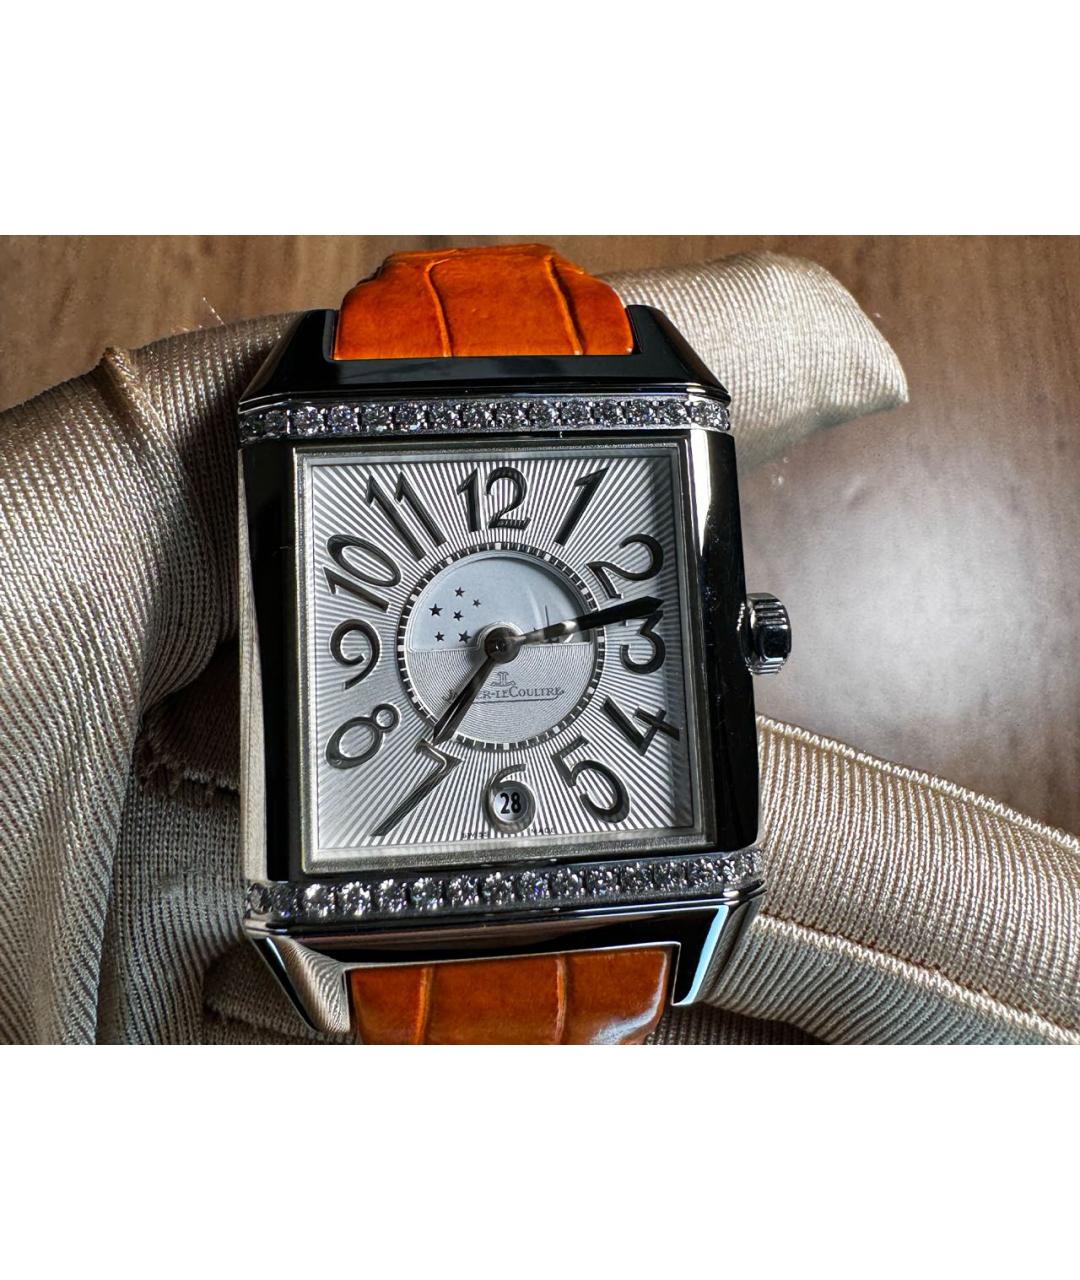 Jaeger LeCoultre Серебряные металлические часы, фото 9